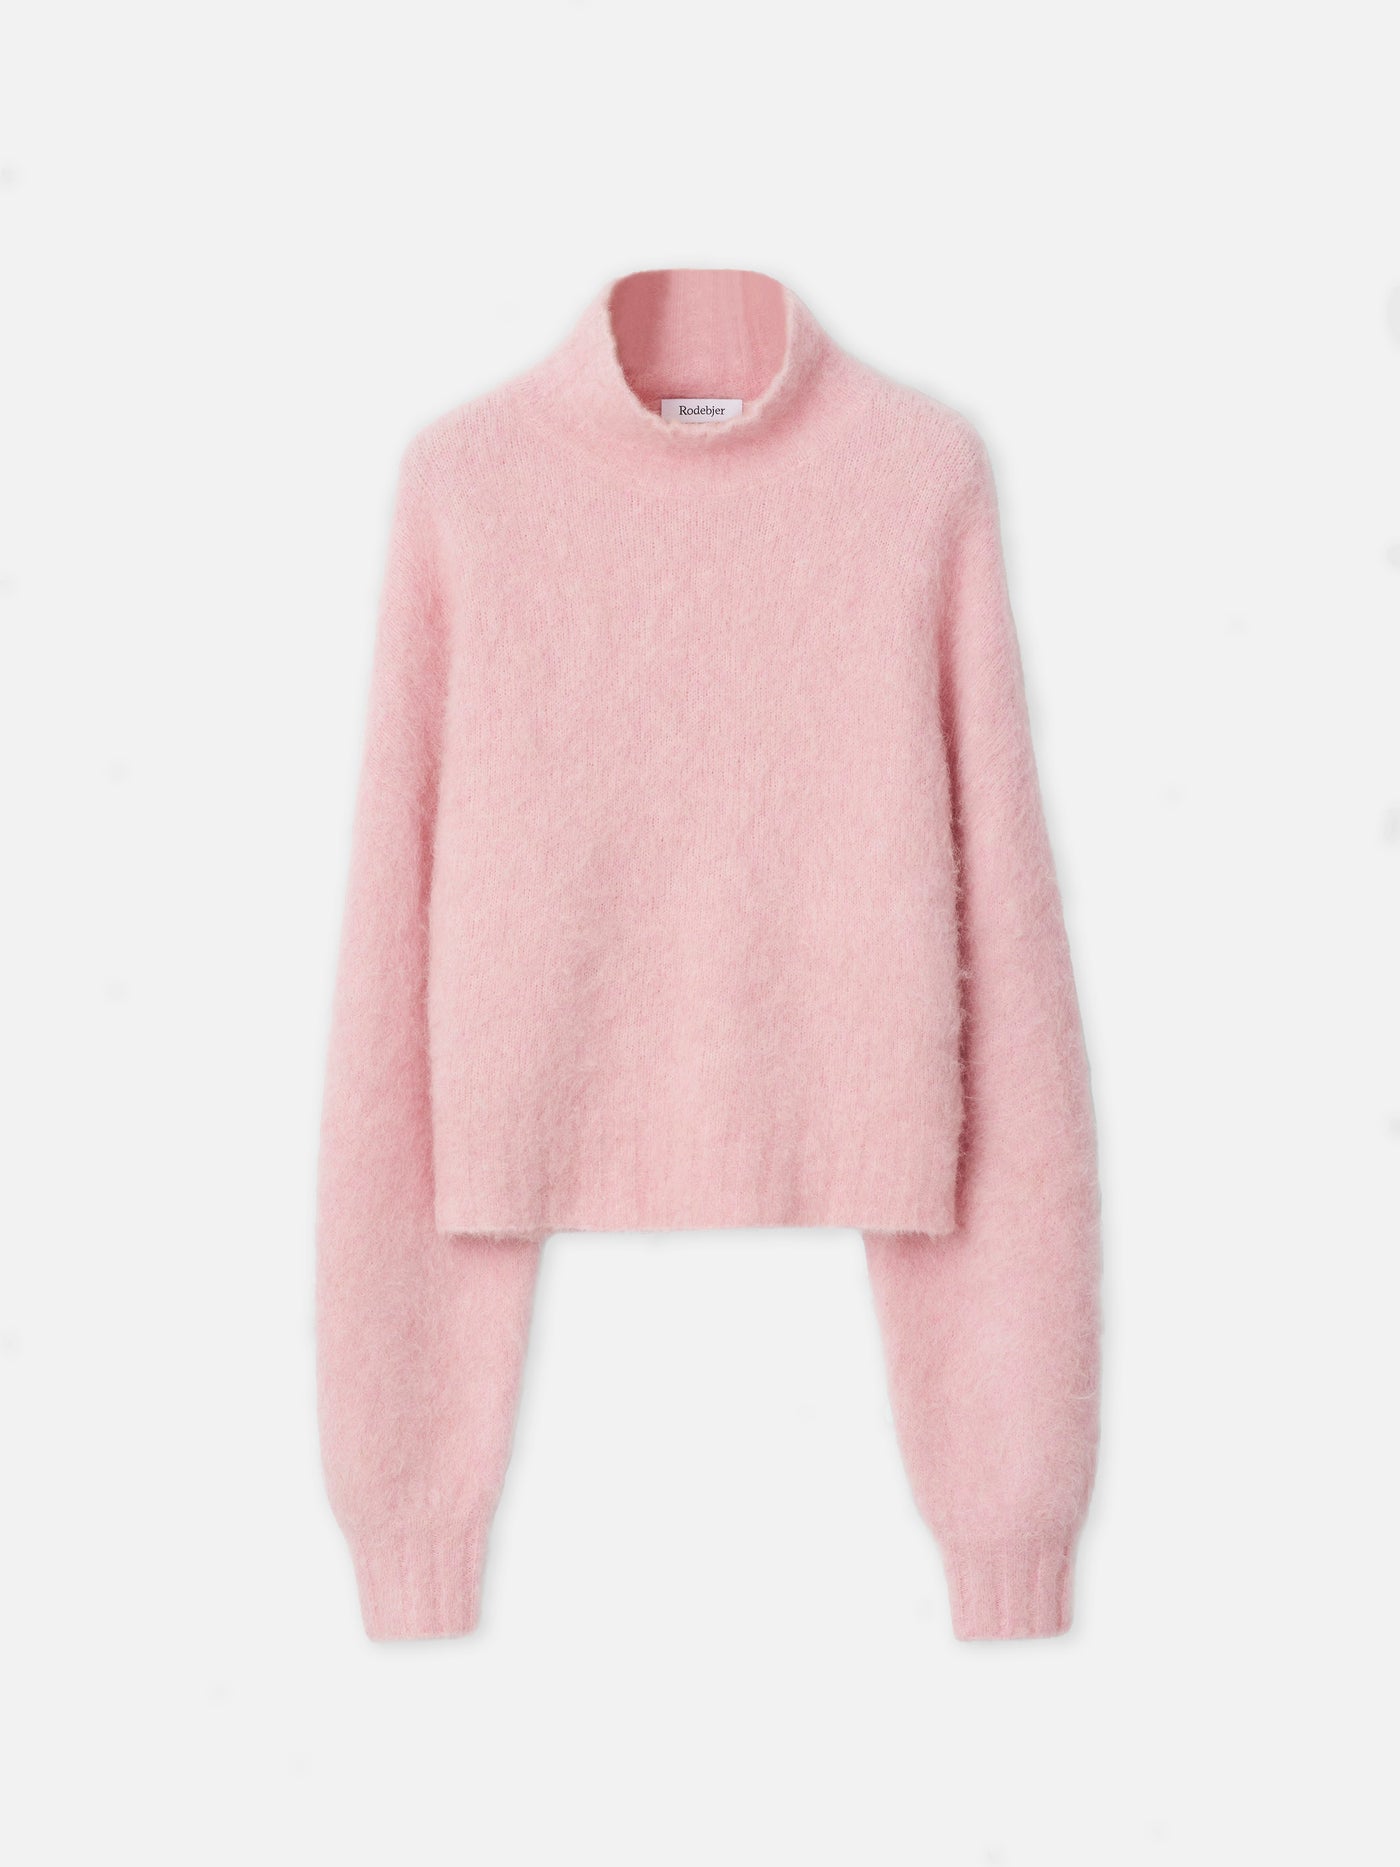 Falalai sweater, pink